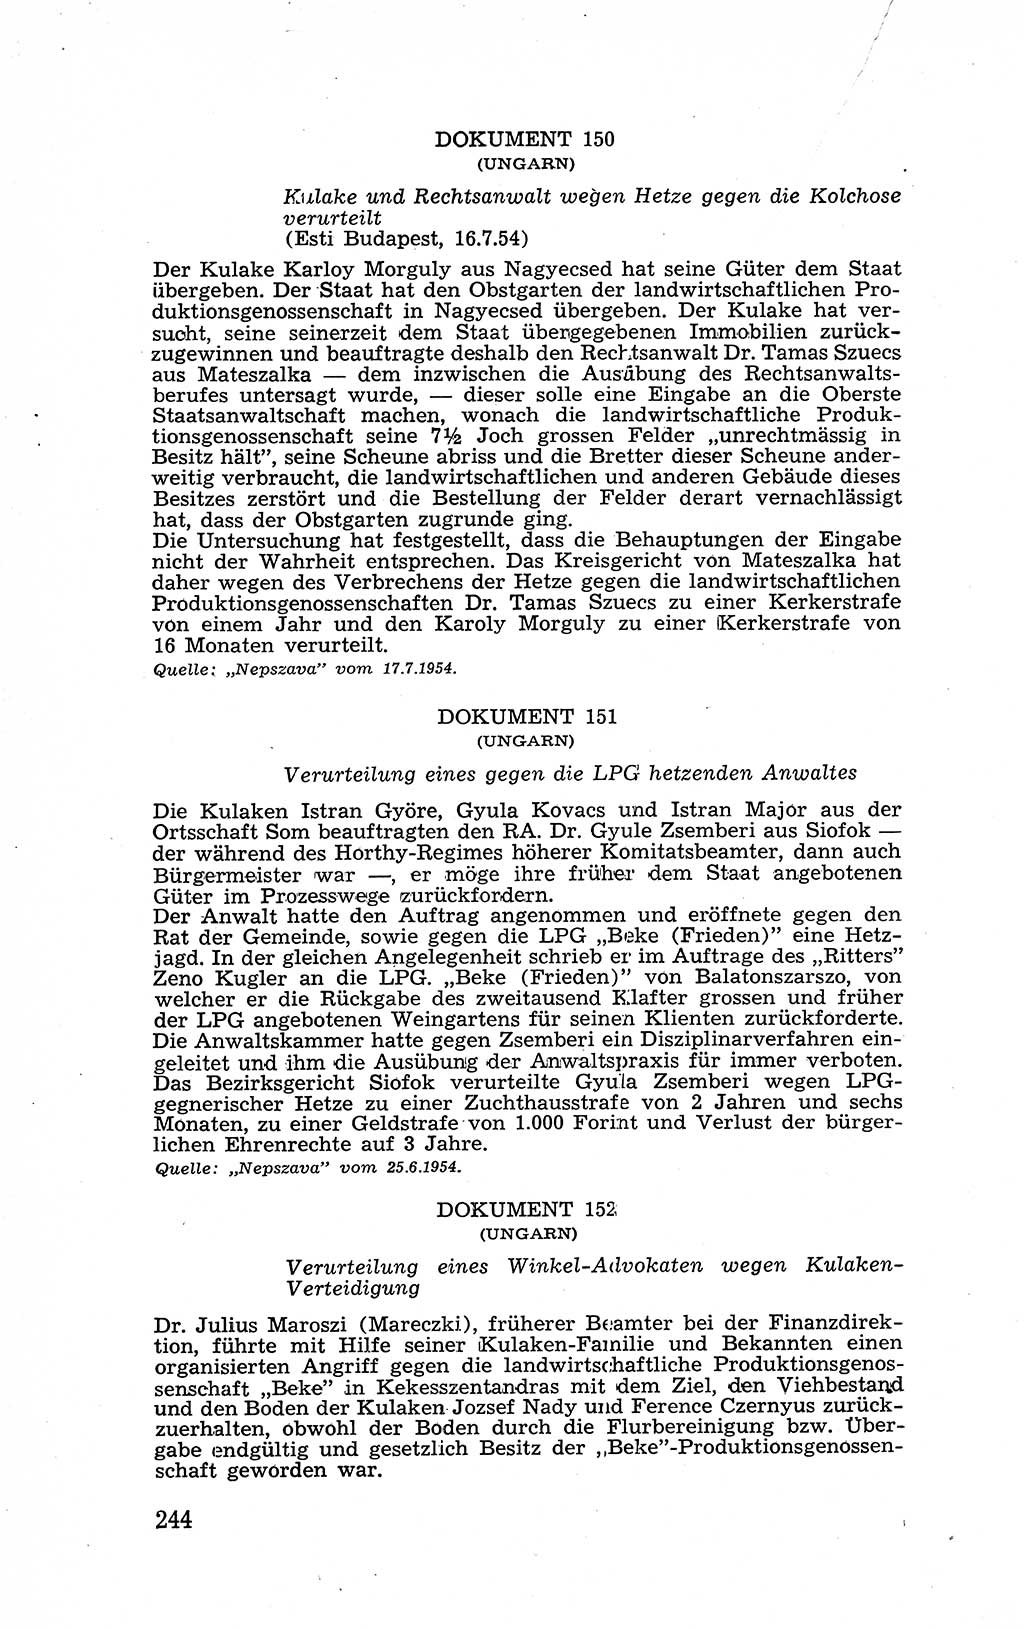 Recht in Fesseln, Dokumente, Internationale Juristen-Kommission [Bundesrepublik Deutschland (BRD)] 1955, Seite 244 (R. Dok. IJK BRD 1955, S. 244)